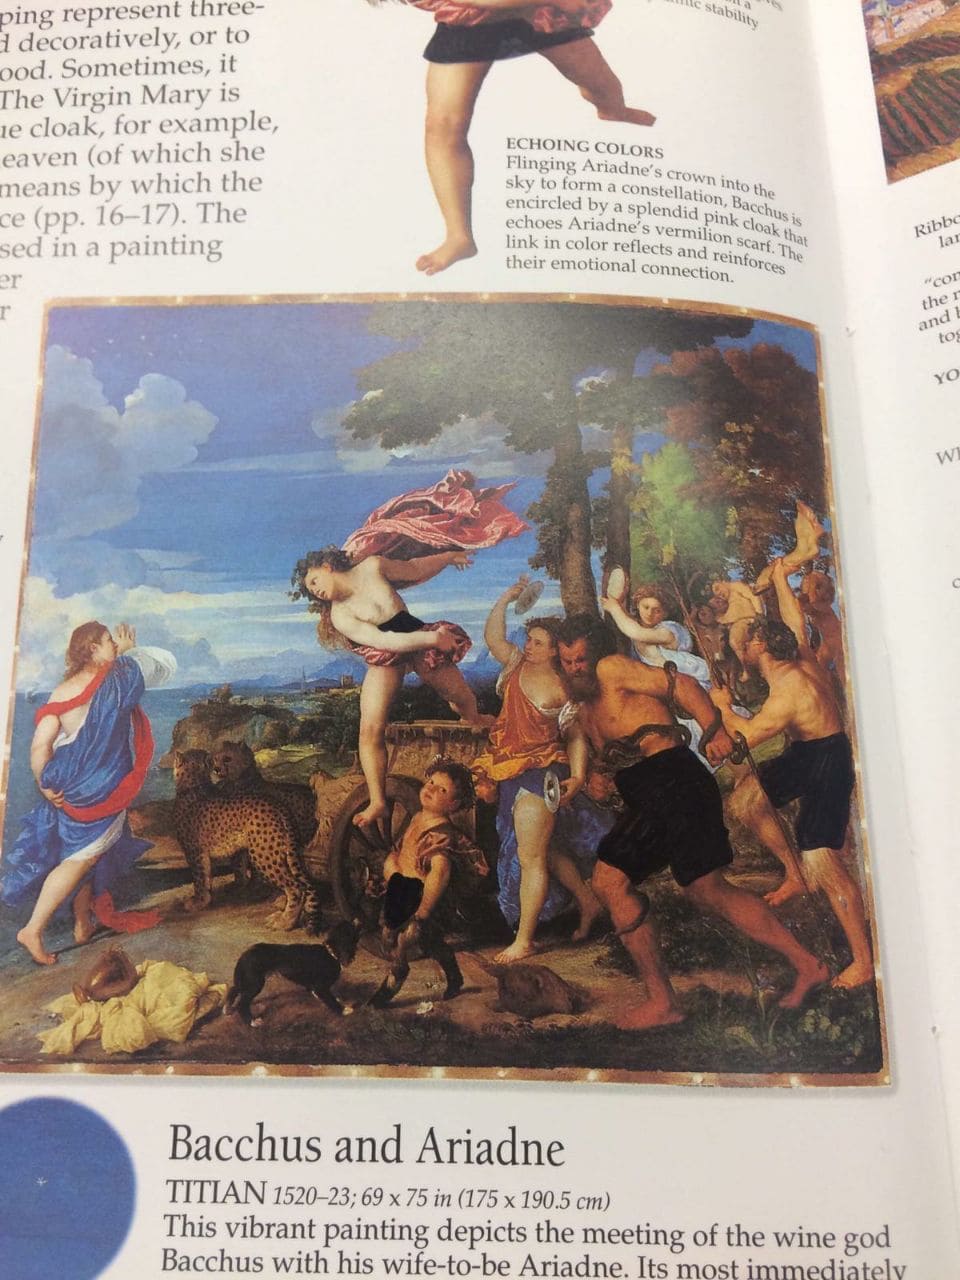 Студент баптистского колледжа показал, как выглядит его книга по искусству. И это триумф цензуры 44